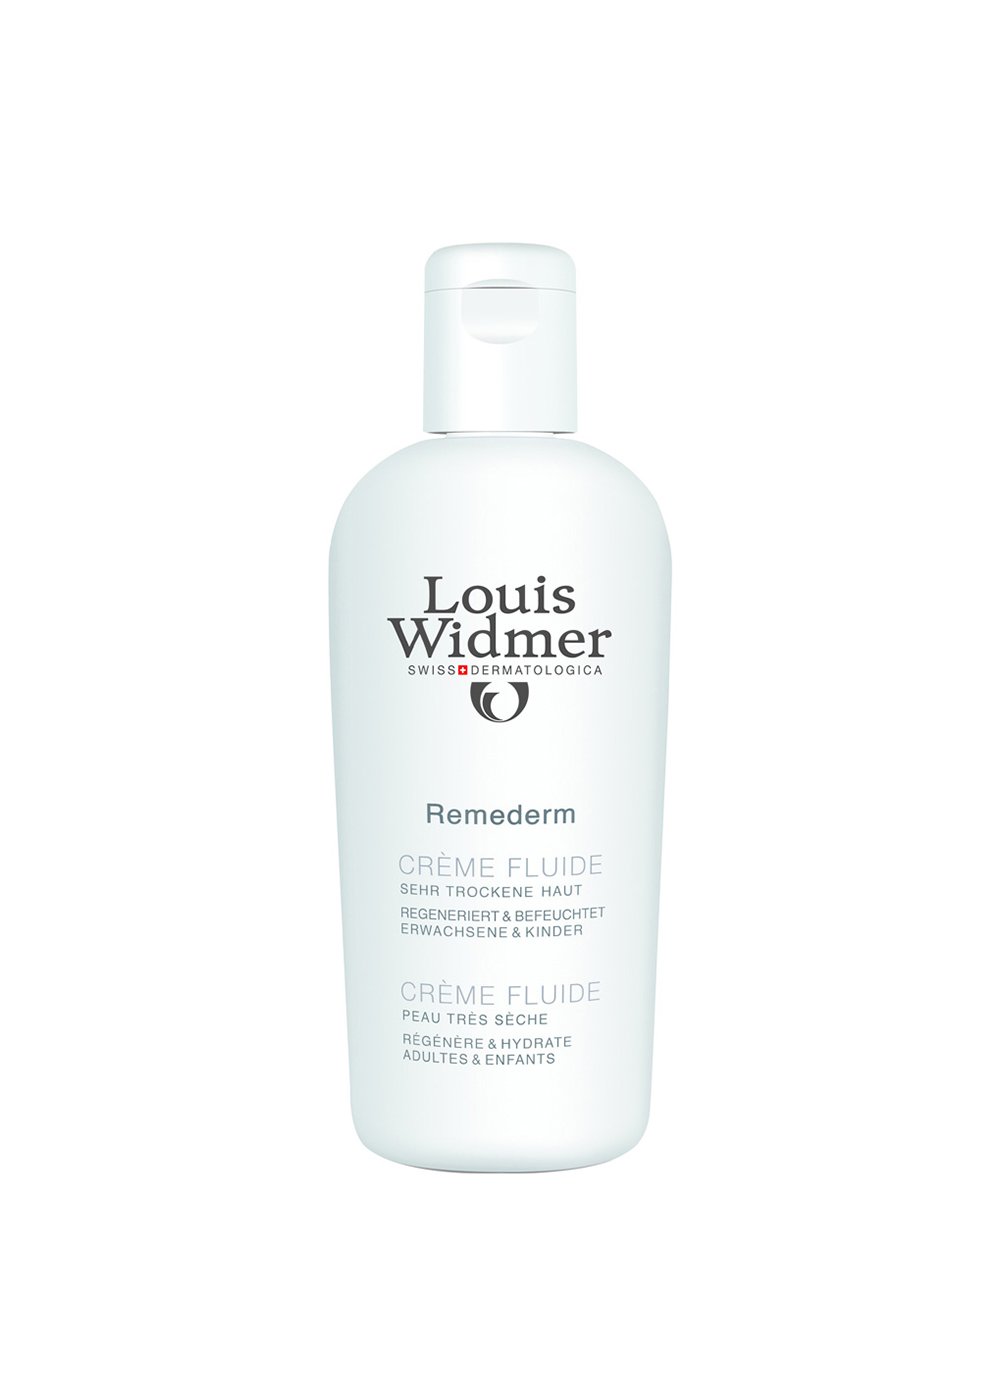 Louis Widmer Remederm Creme Fluide unparfümiert 200 ml, 07613160